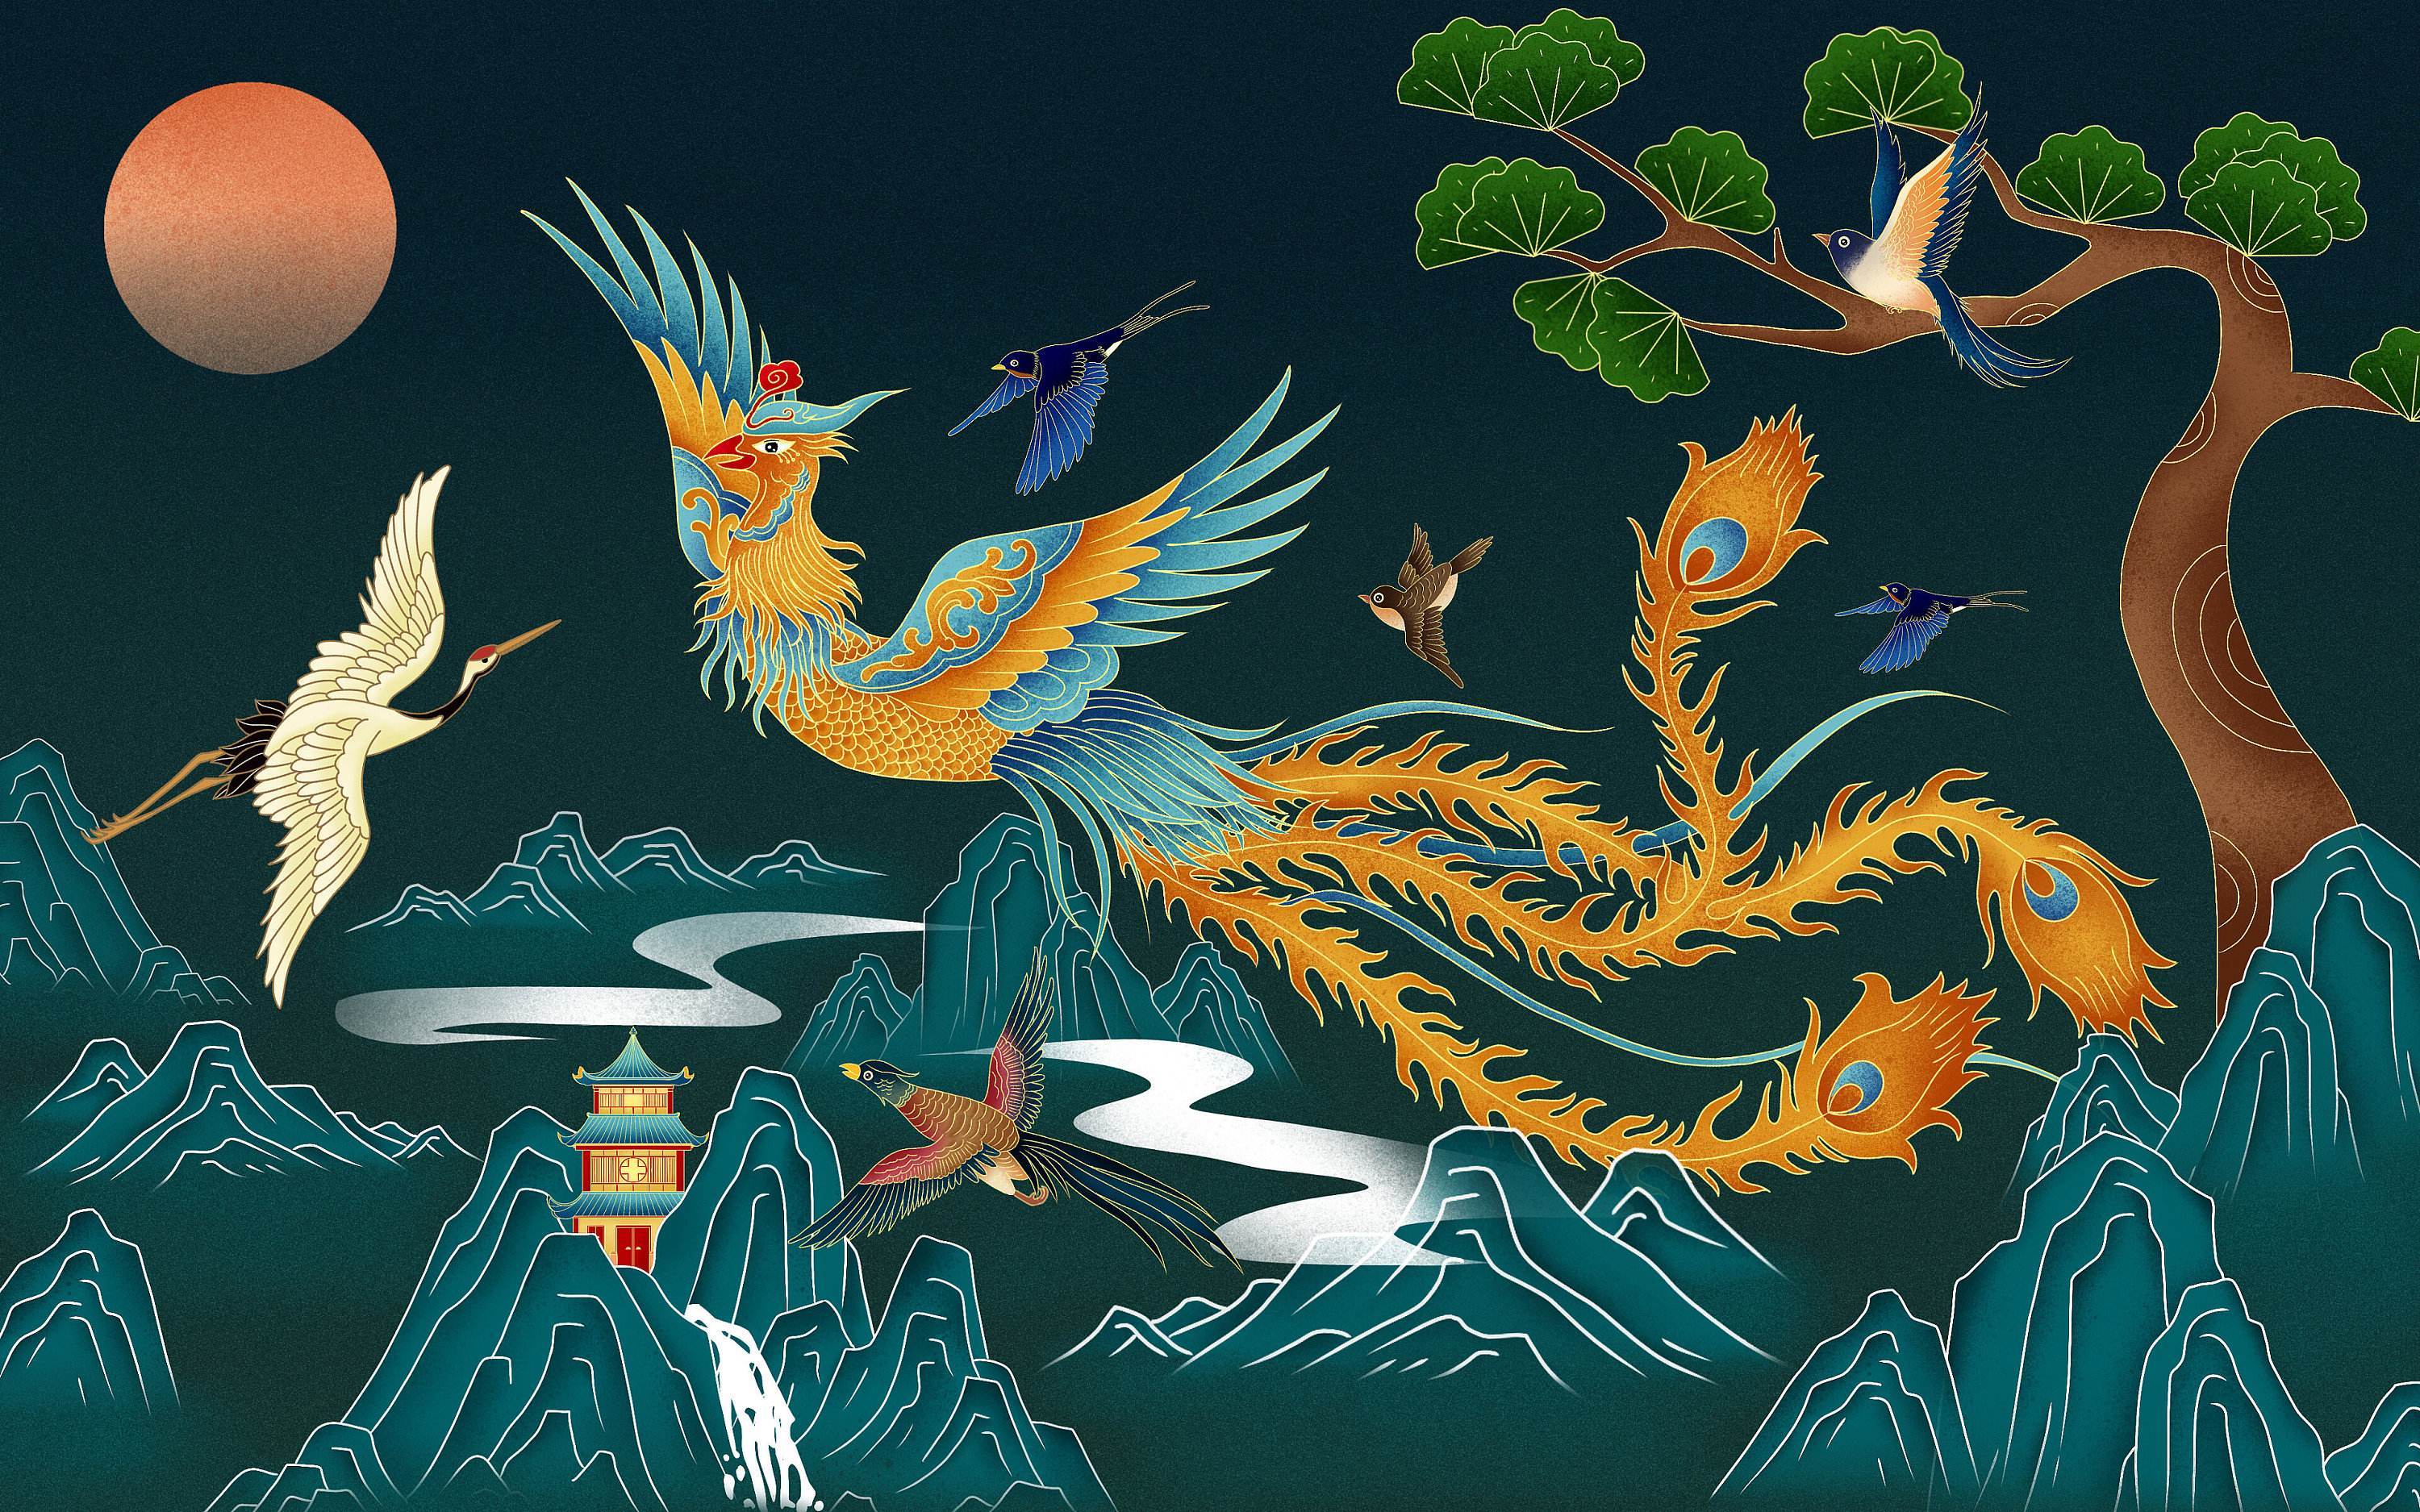 可以说凤凰是一种传说中的的神鸟,是古人想象的产物,由多种动物的